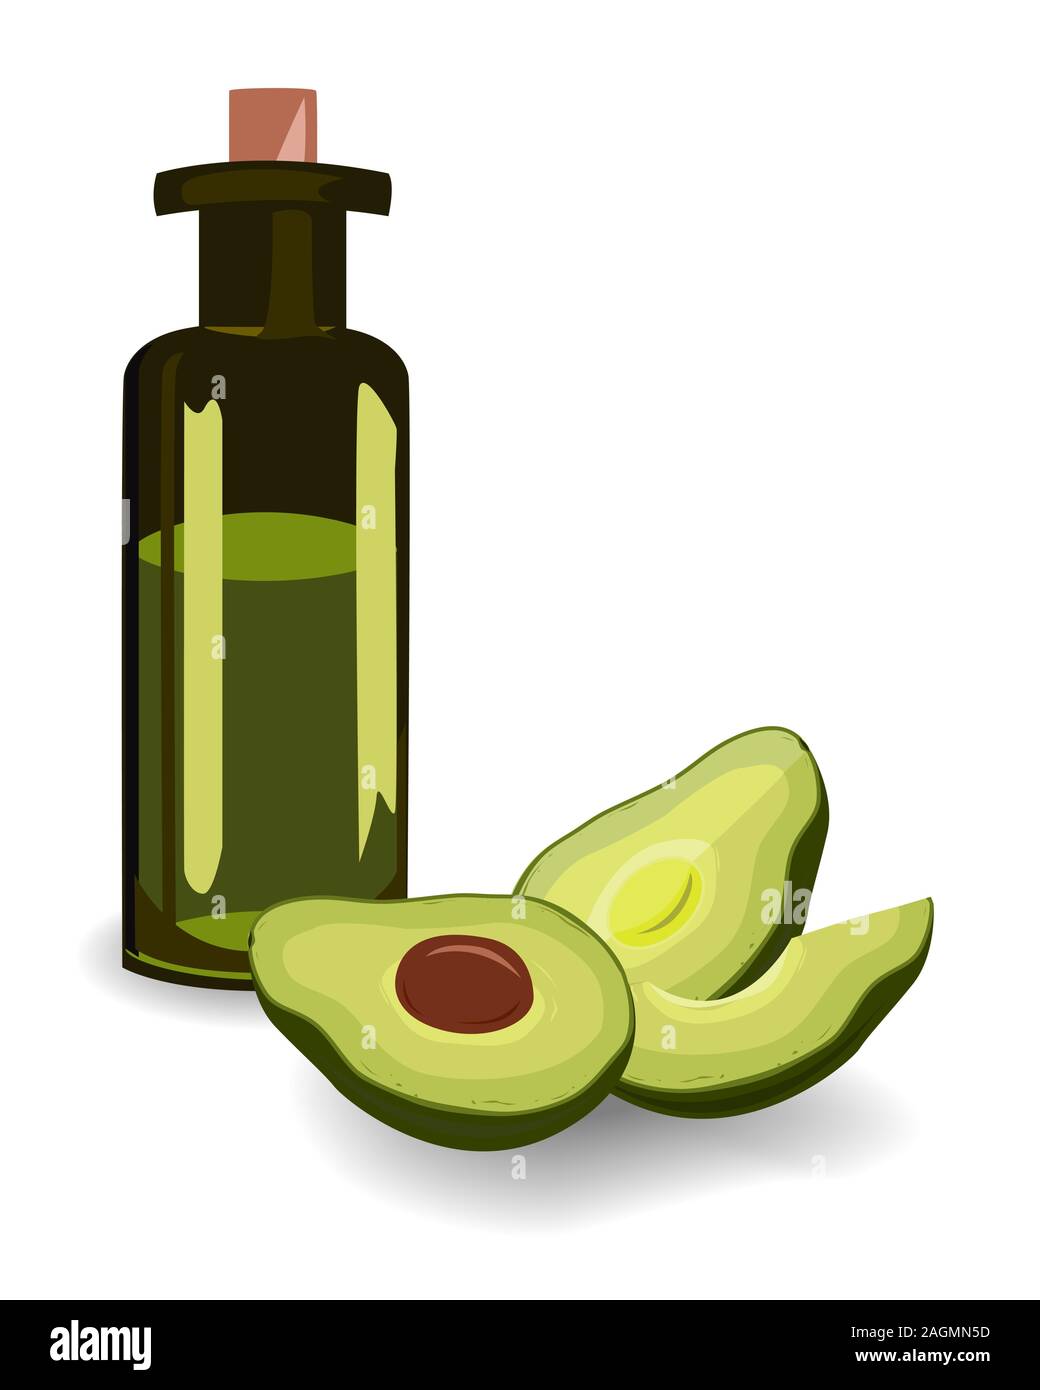 Olio extra vergine di olio di avocado e tagliate a metà avocado su sfondo bianco. Gli elementi di design per il confezionamento o la cottura. Illustrazione Vettoriale Illustrazione Vettoriale